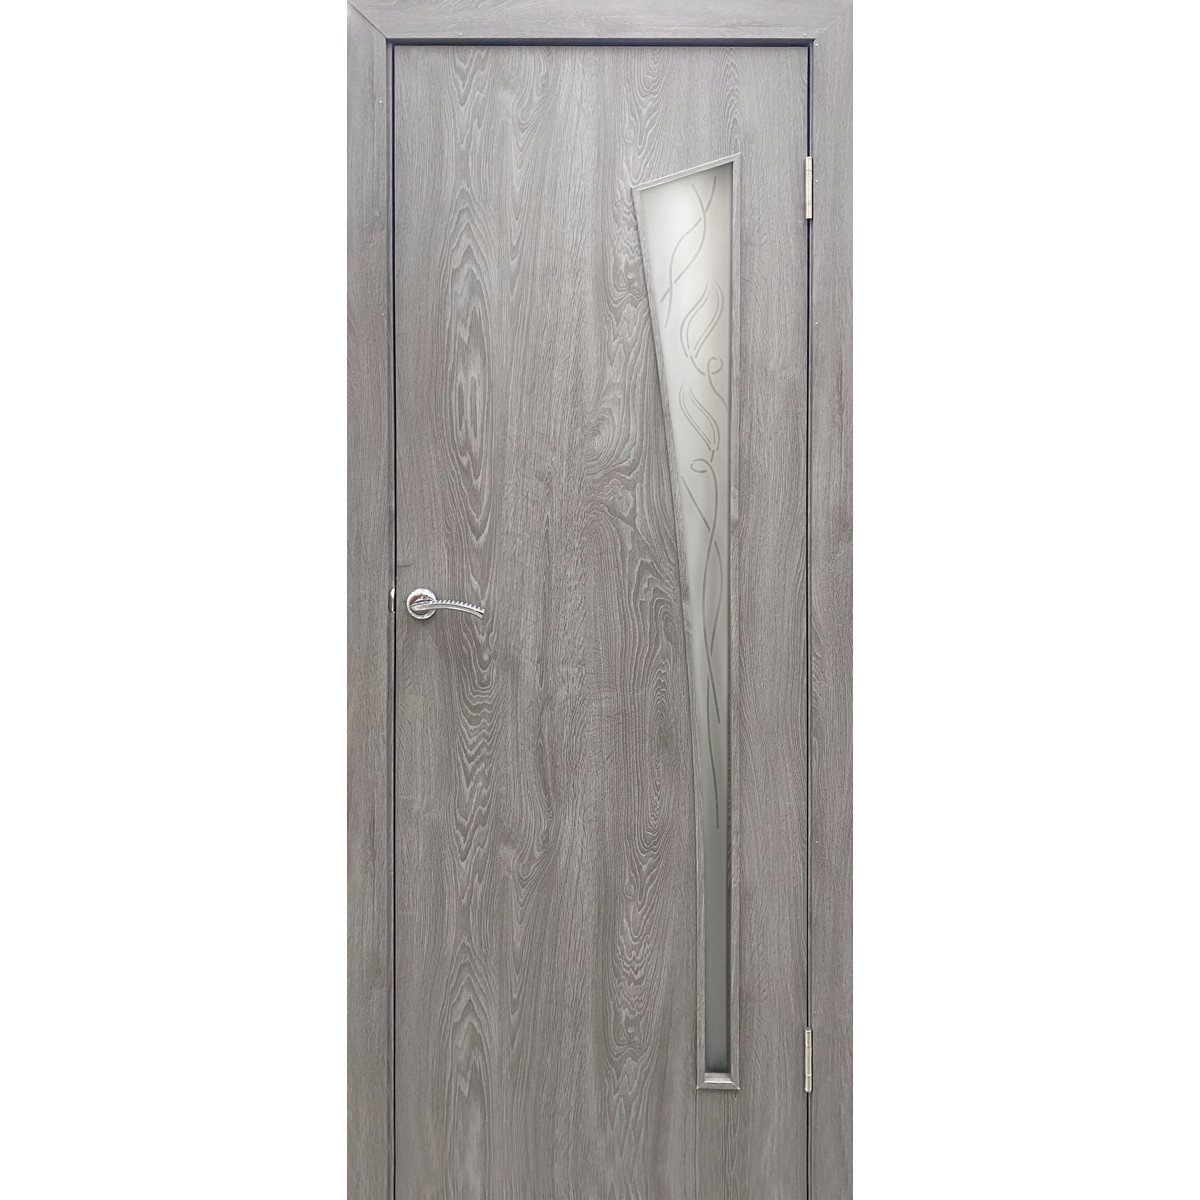 Дверь межкомнатная остекленная ламинированная Белеза 200х70 см цвет тернер серый